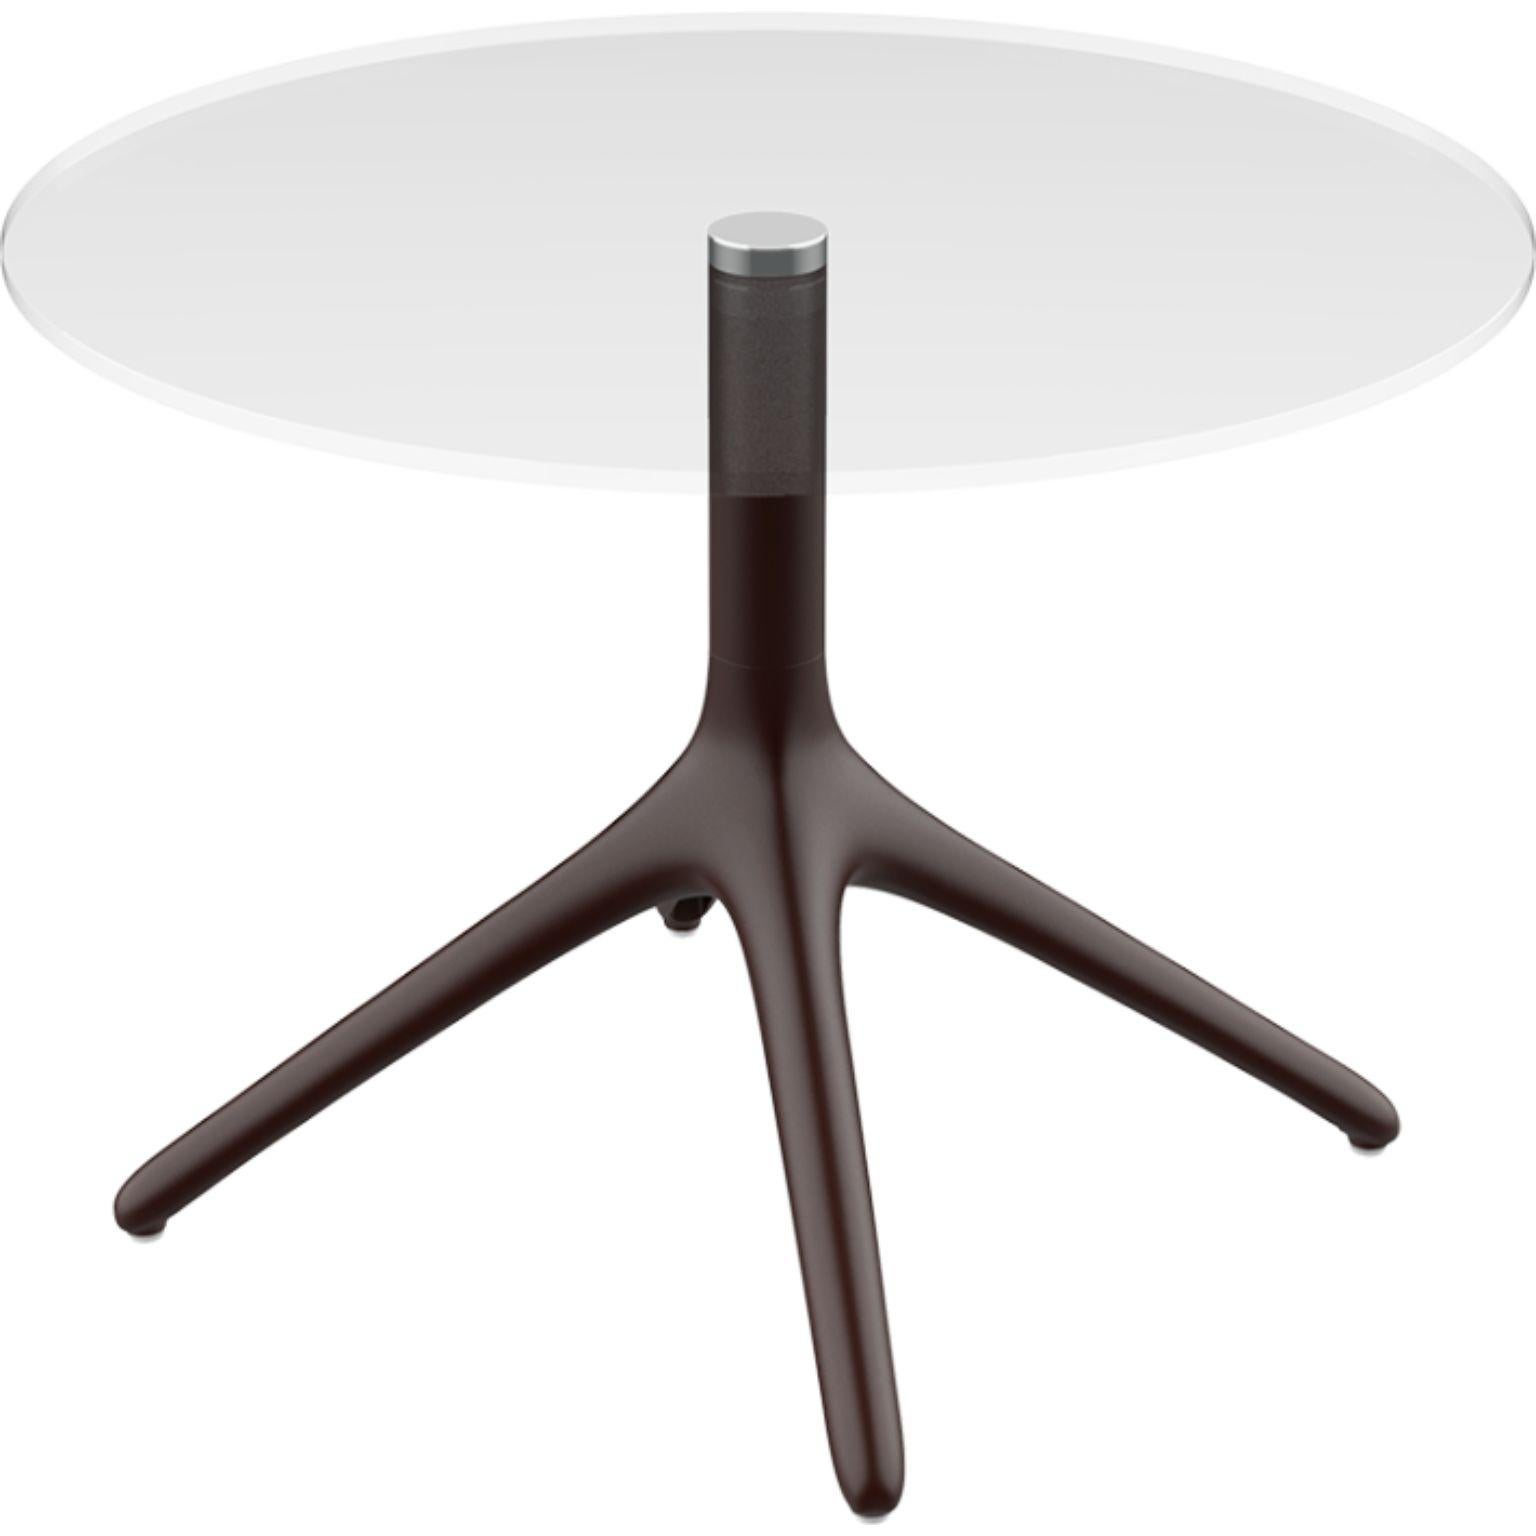 Table Uni chocolat 50 de Mowee.
Dimensions : P45,5 x H50 cm.
Matériau : Aluminium, verre trempé.
Poids : 5 kg
Disponible également en différentes couleurs et finitions. Version pliable disponible. 

Une table conçue pour être la plus